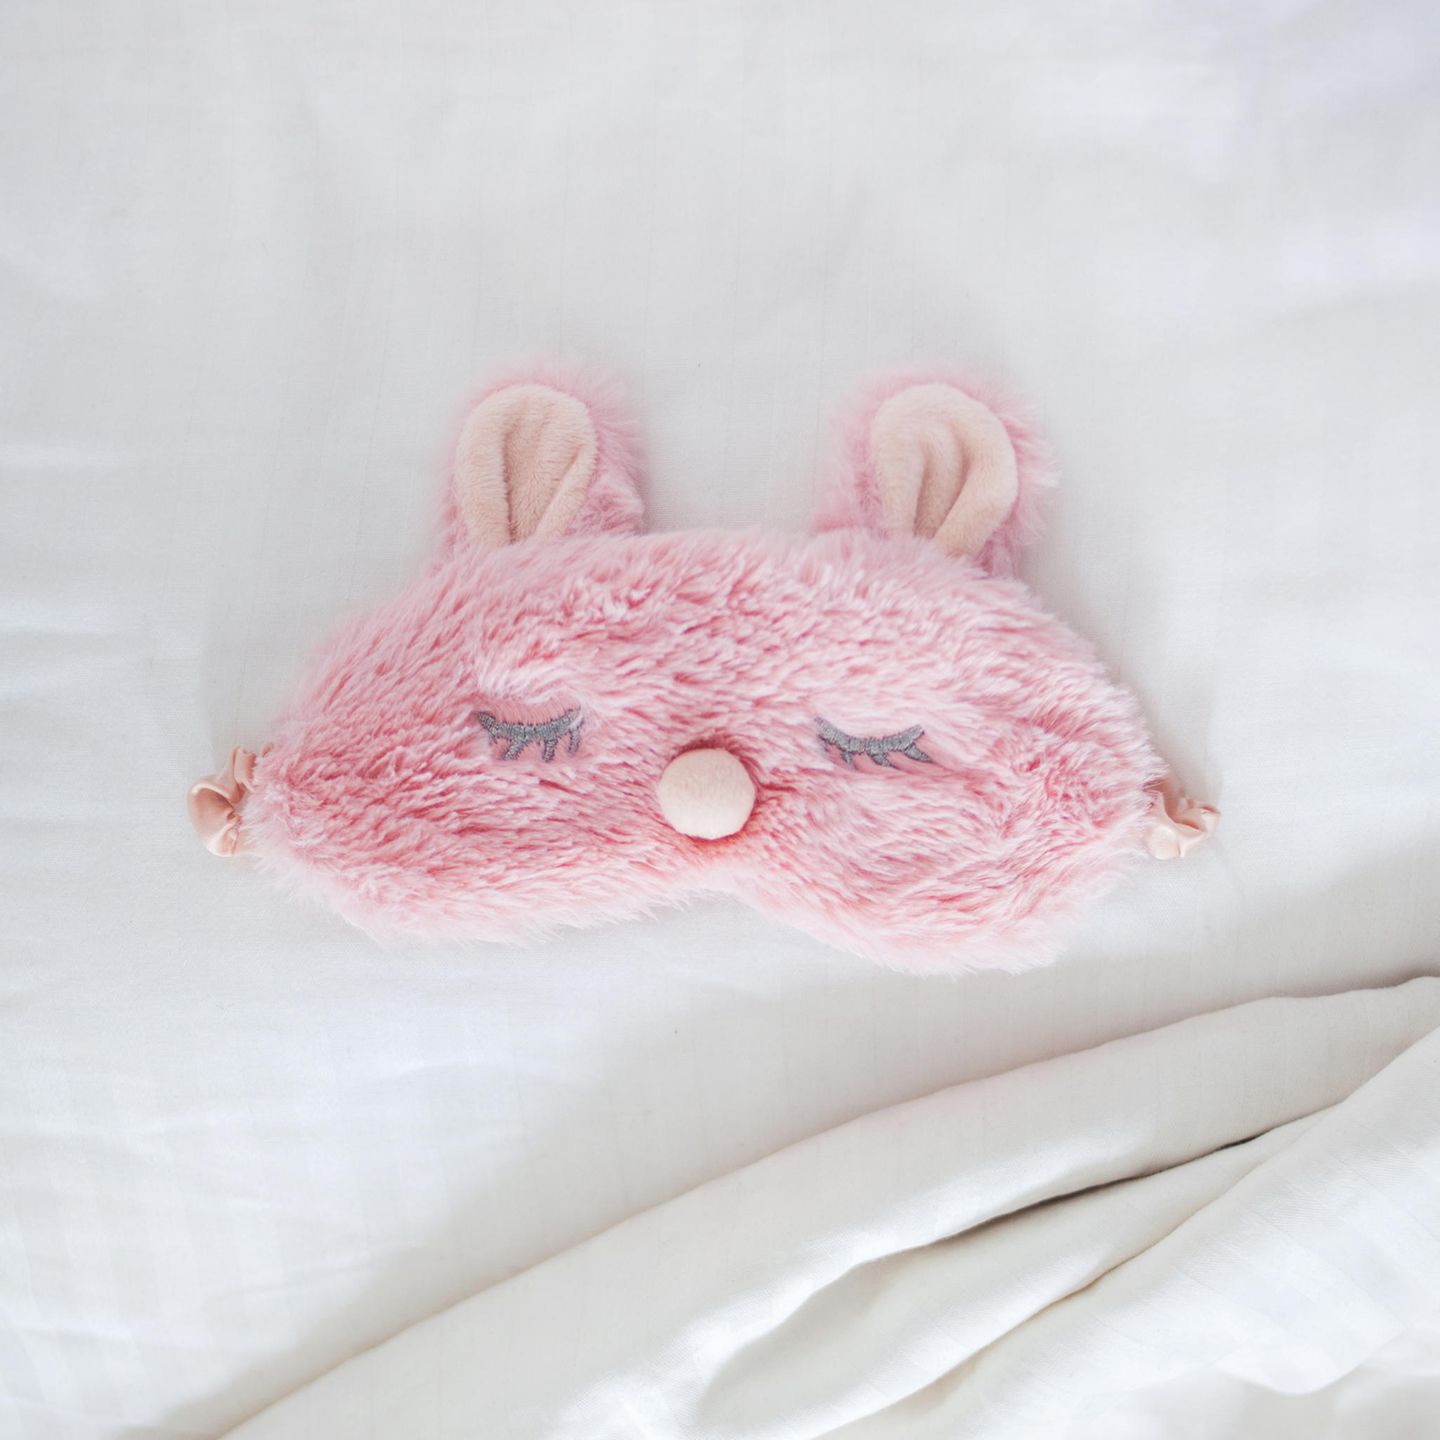 Gesund leben: Rosa Schlafmaske aus Plüsch auf einem Bett